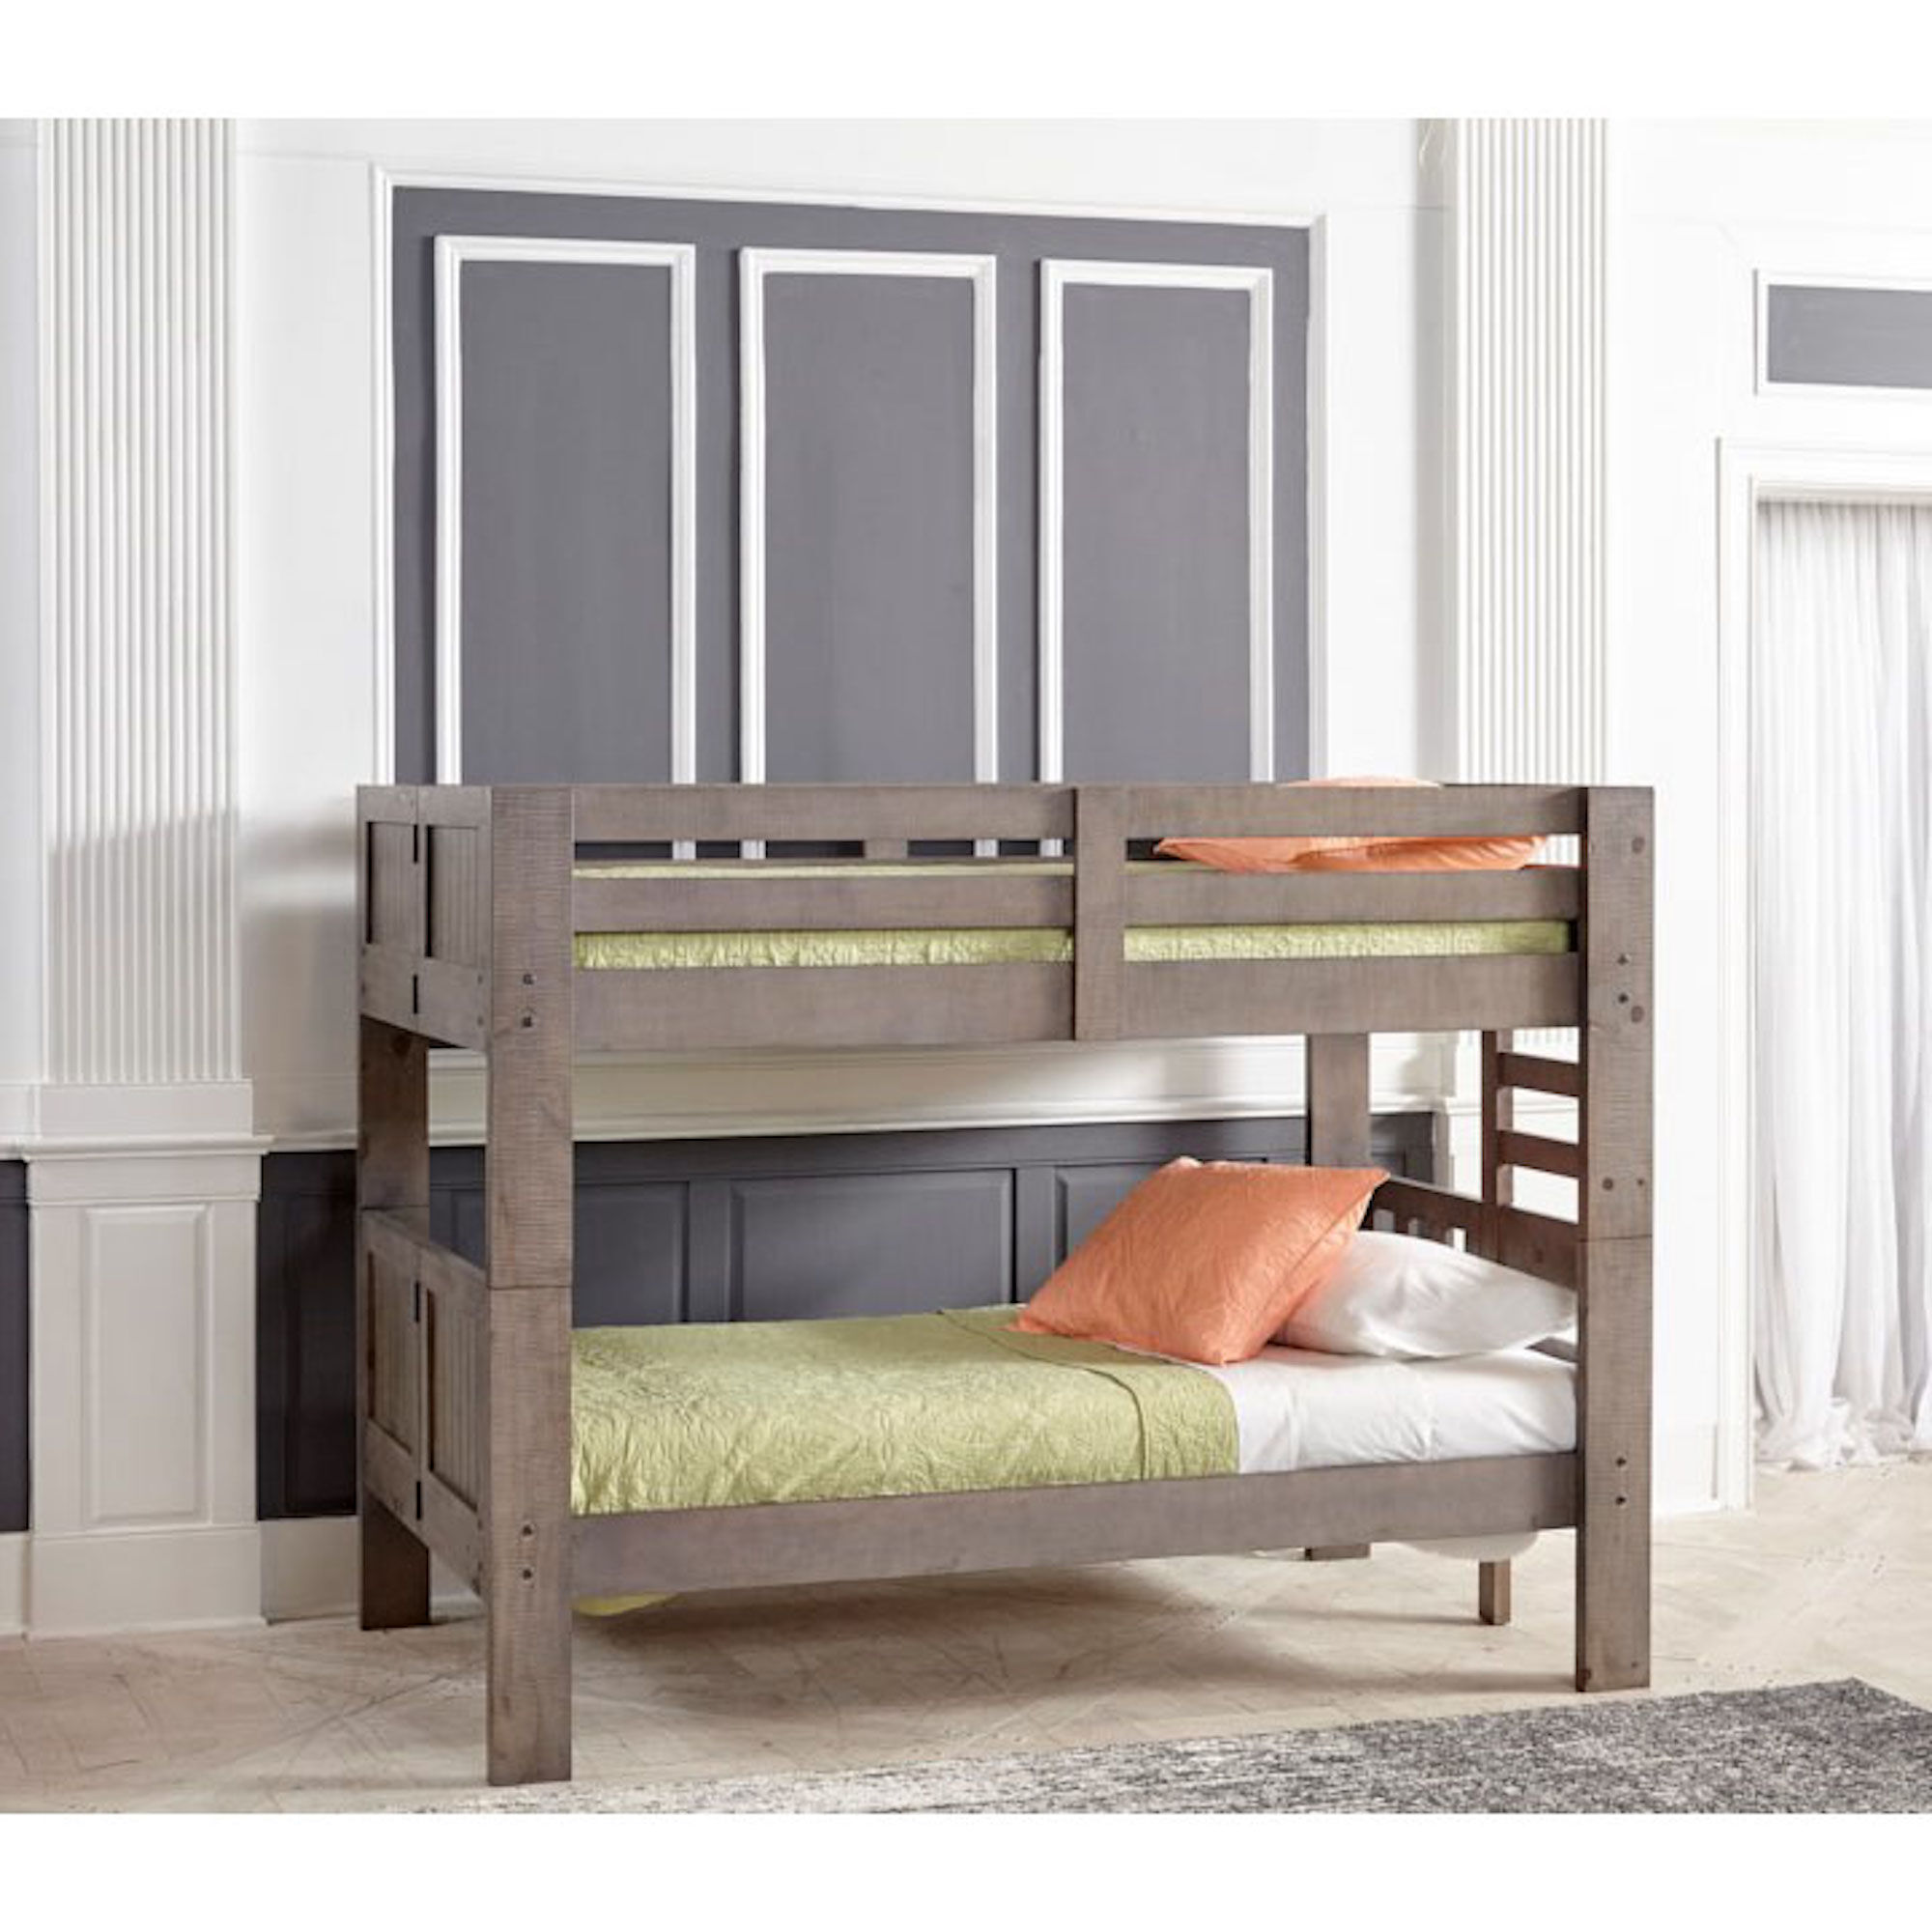 oak bunk bed